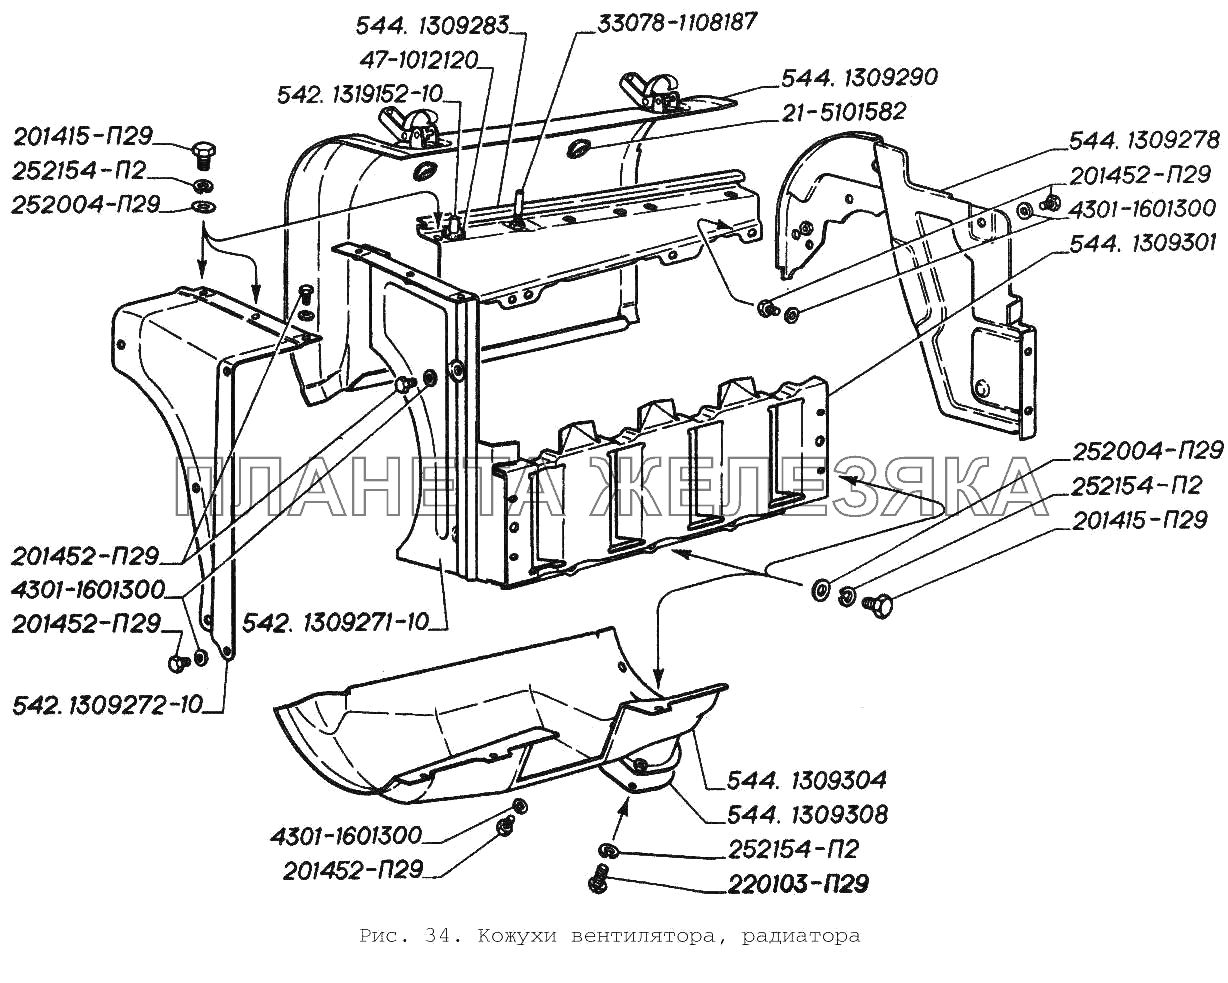 Кожухи вентилятора, радиатора ГАЗ-3306